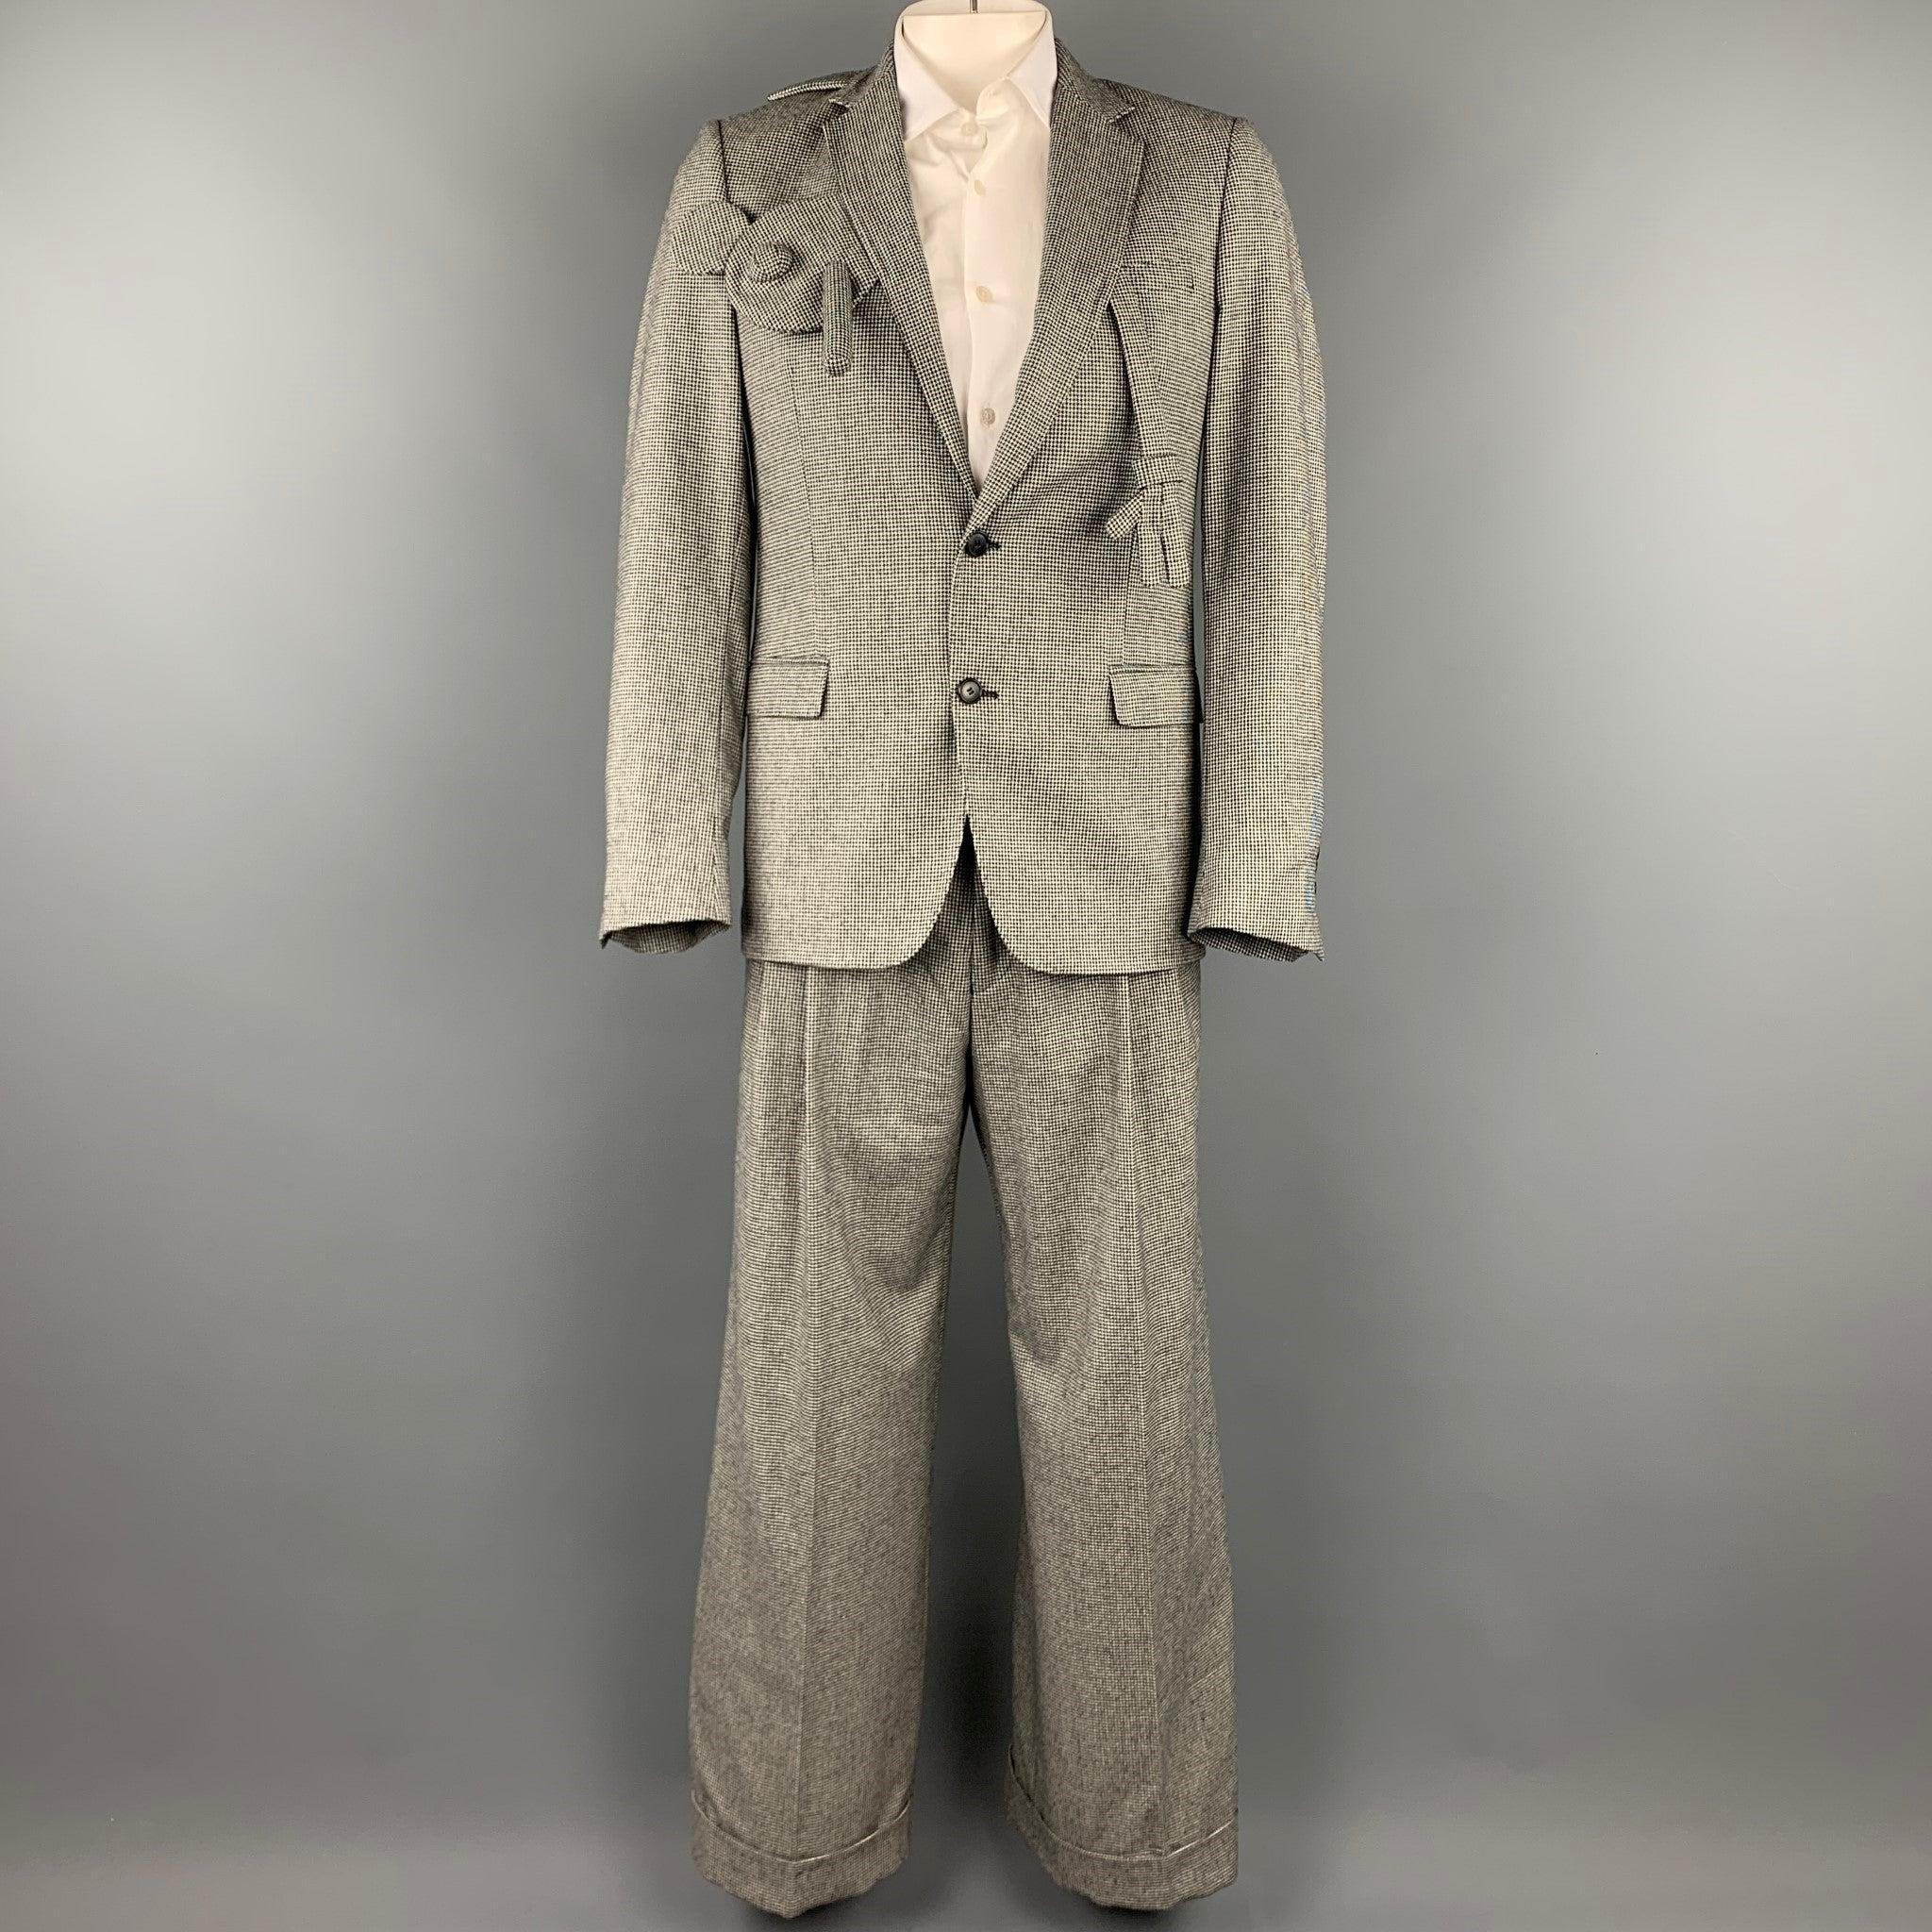 Rare costume WALTER VAN BEIRENDONCK F/W 16 en coton / laine pied-de-poule noir et blanc avec une doublure complète présentant son design original 